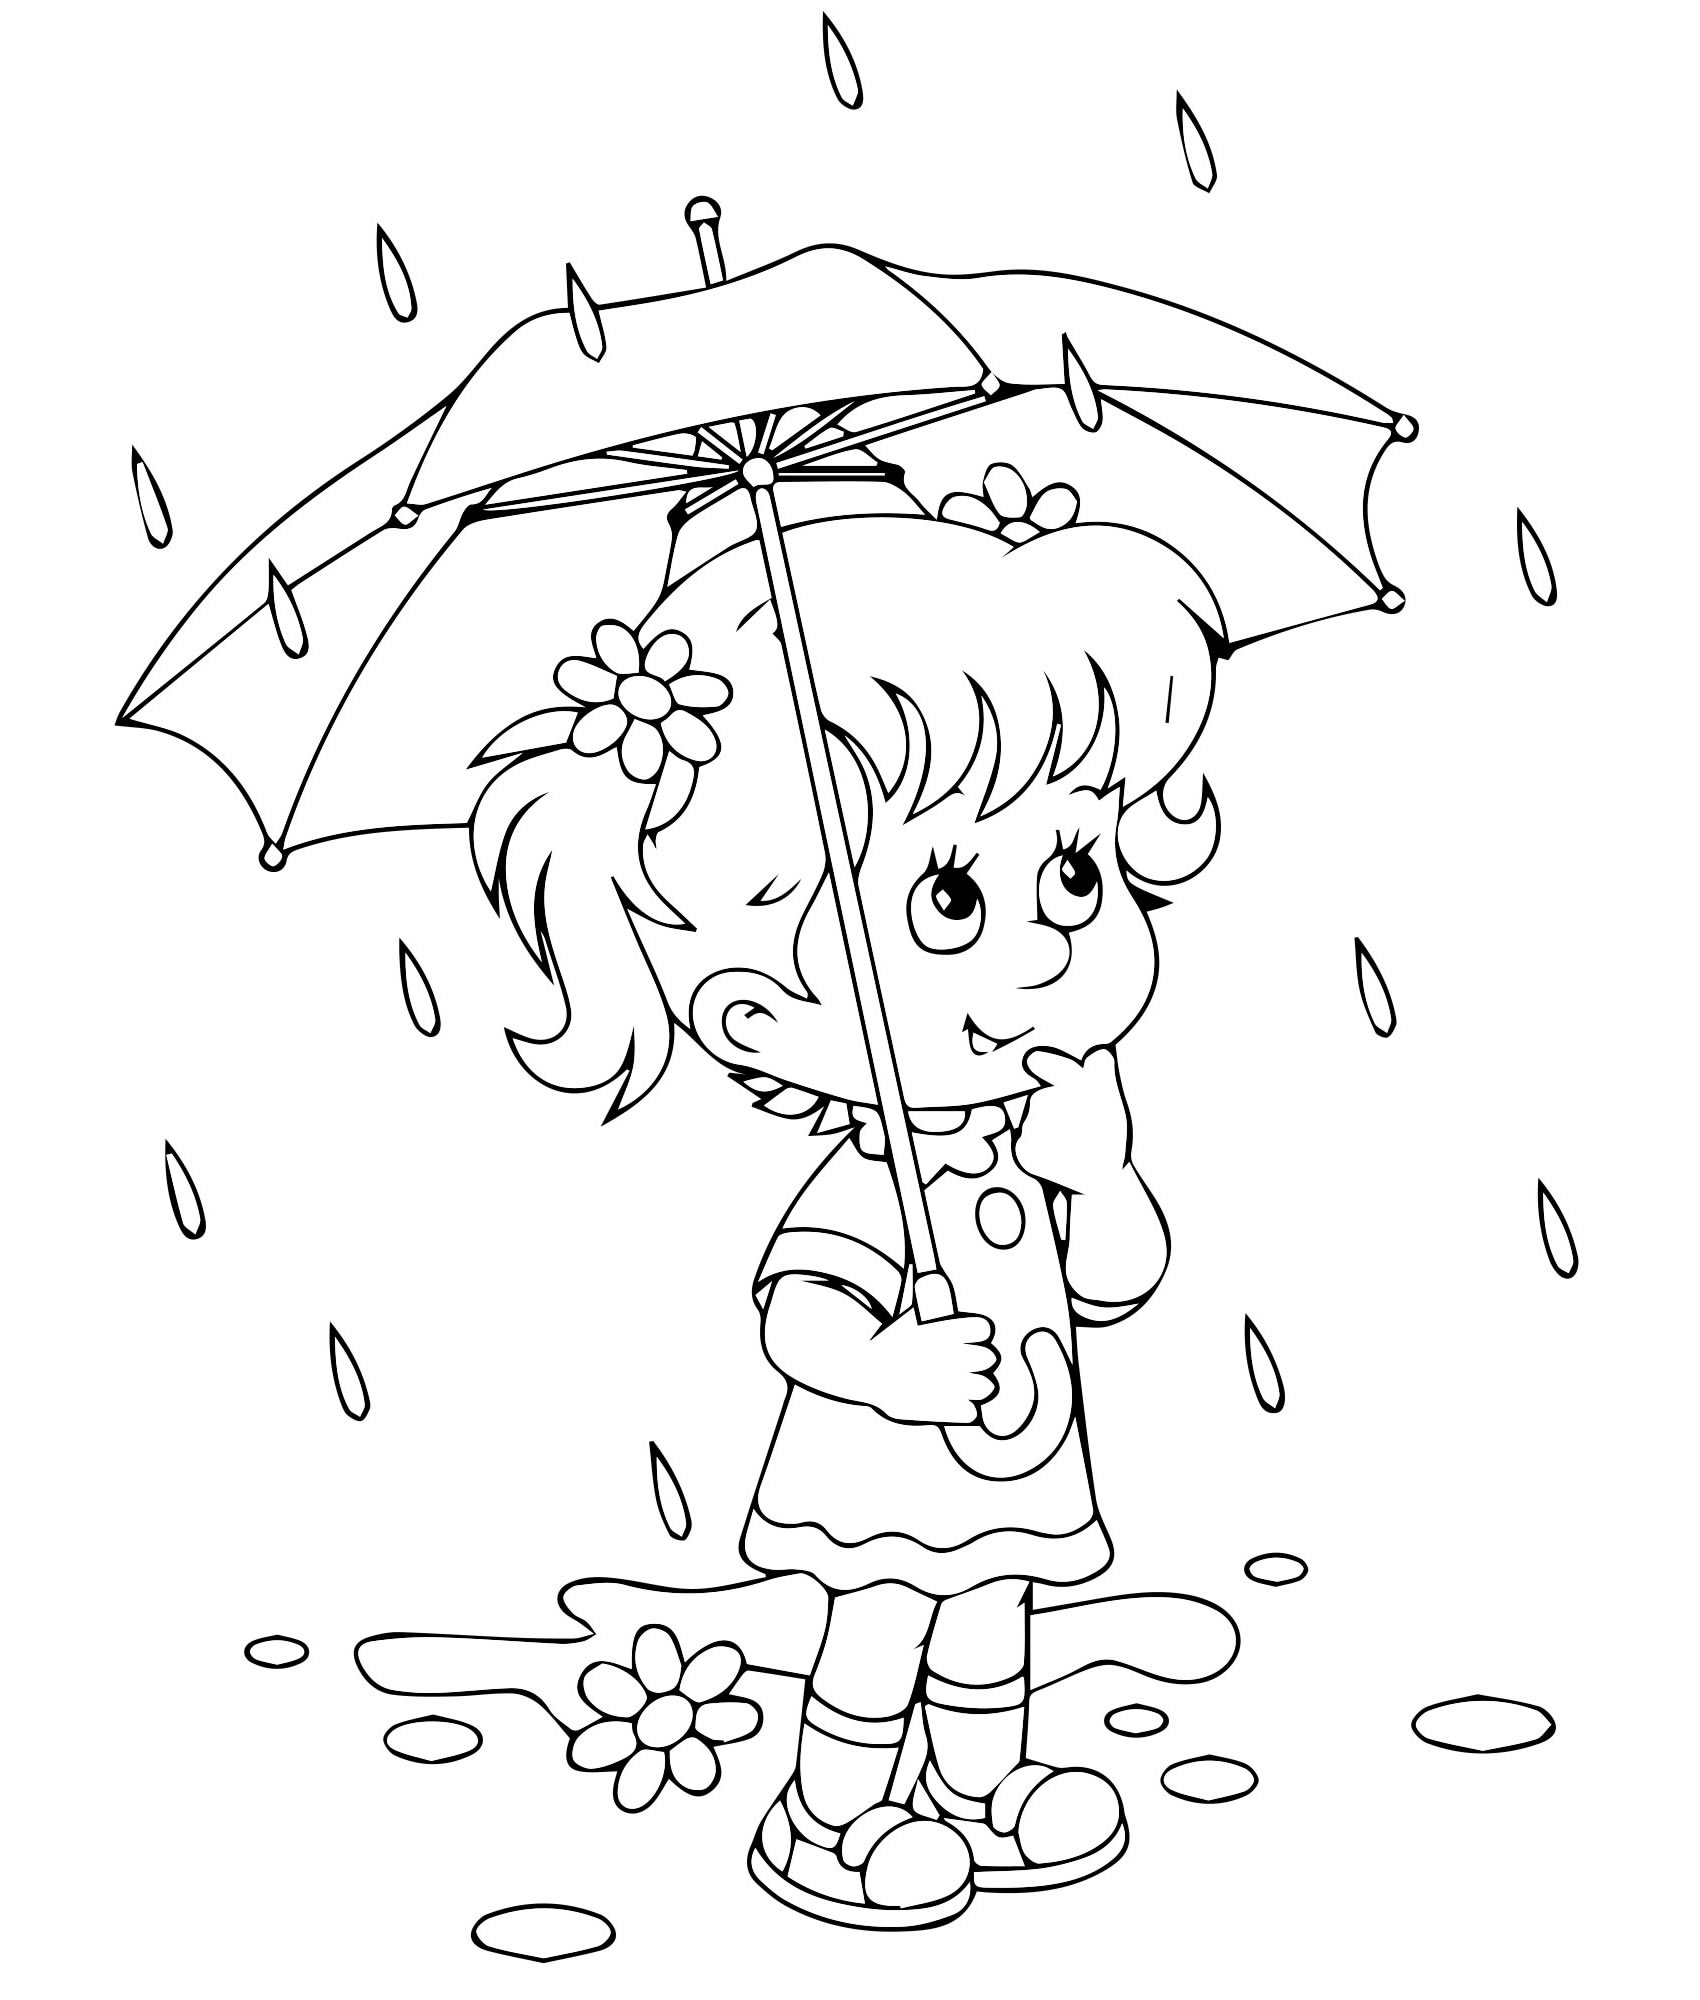 Дождь раскраска для детей